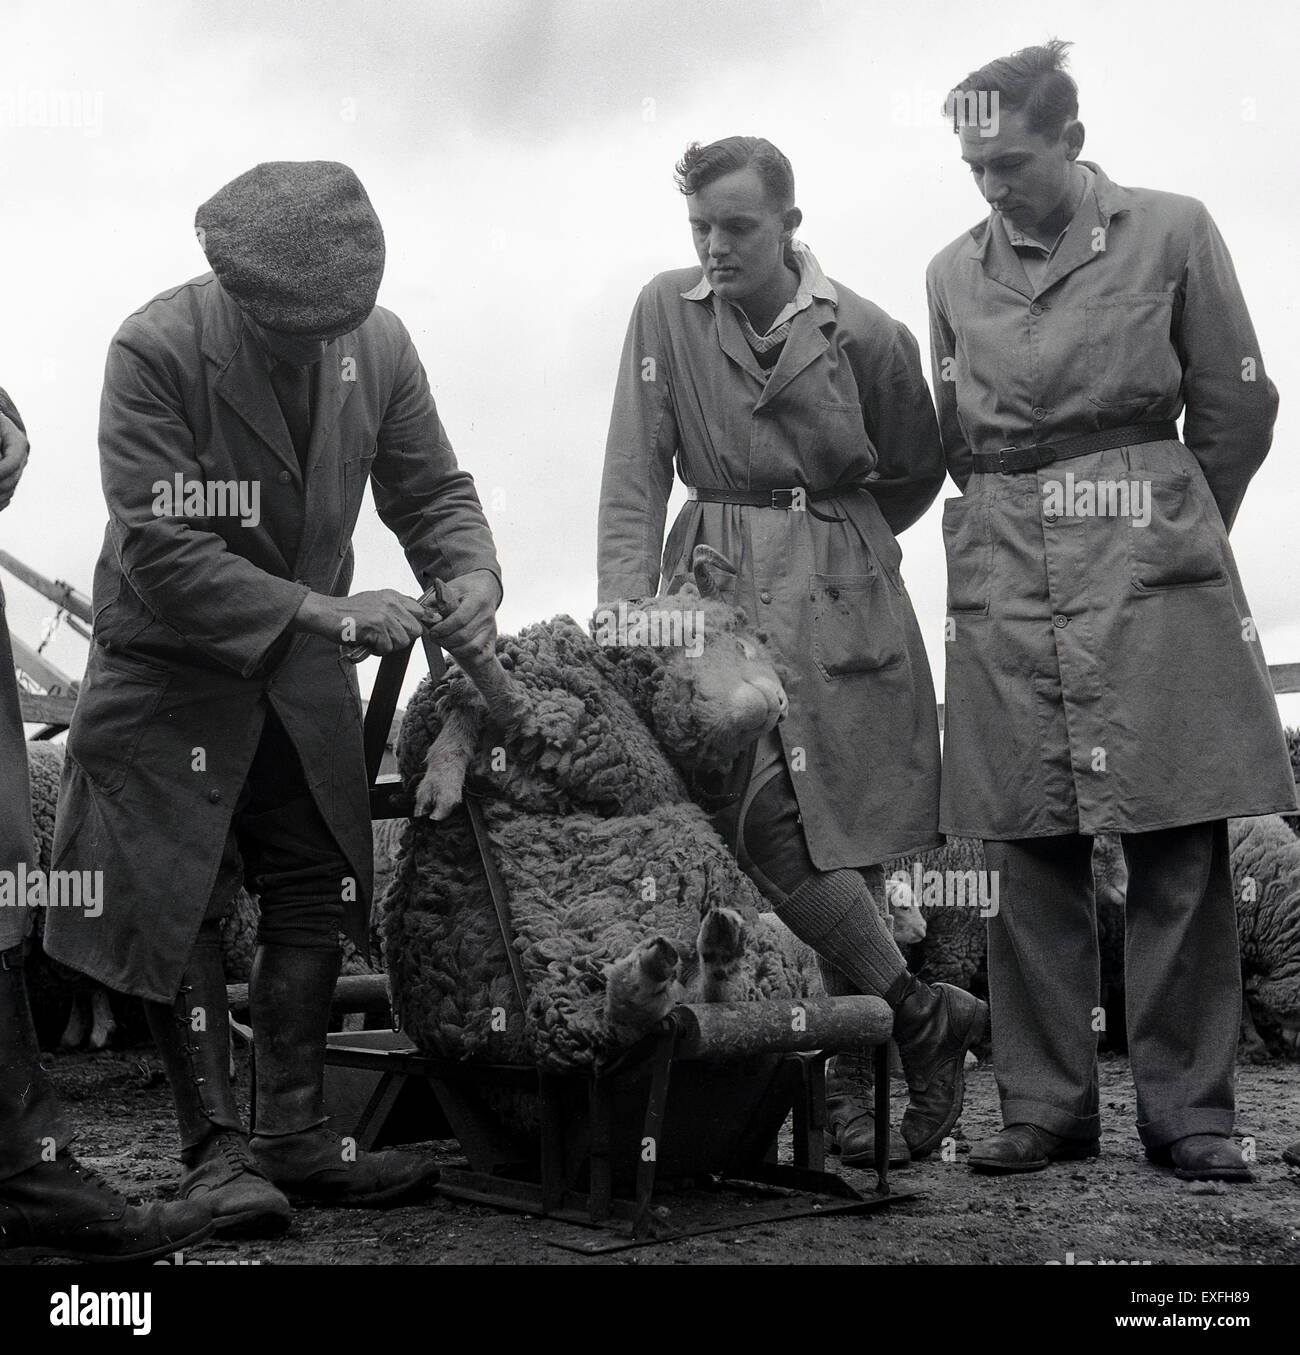 Geschichtsbild, 1950er Jahre, zeigt eine zwei männliche Studenten oder Lehrlinge auf einem Bauernhof oder Landwirtschaftsschule wird gezeigt, wie man einen Schaf HUF trimmen. Stockfoto